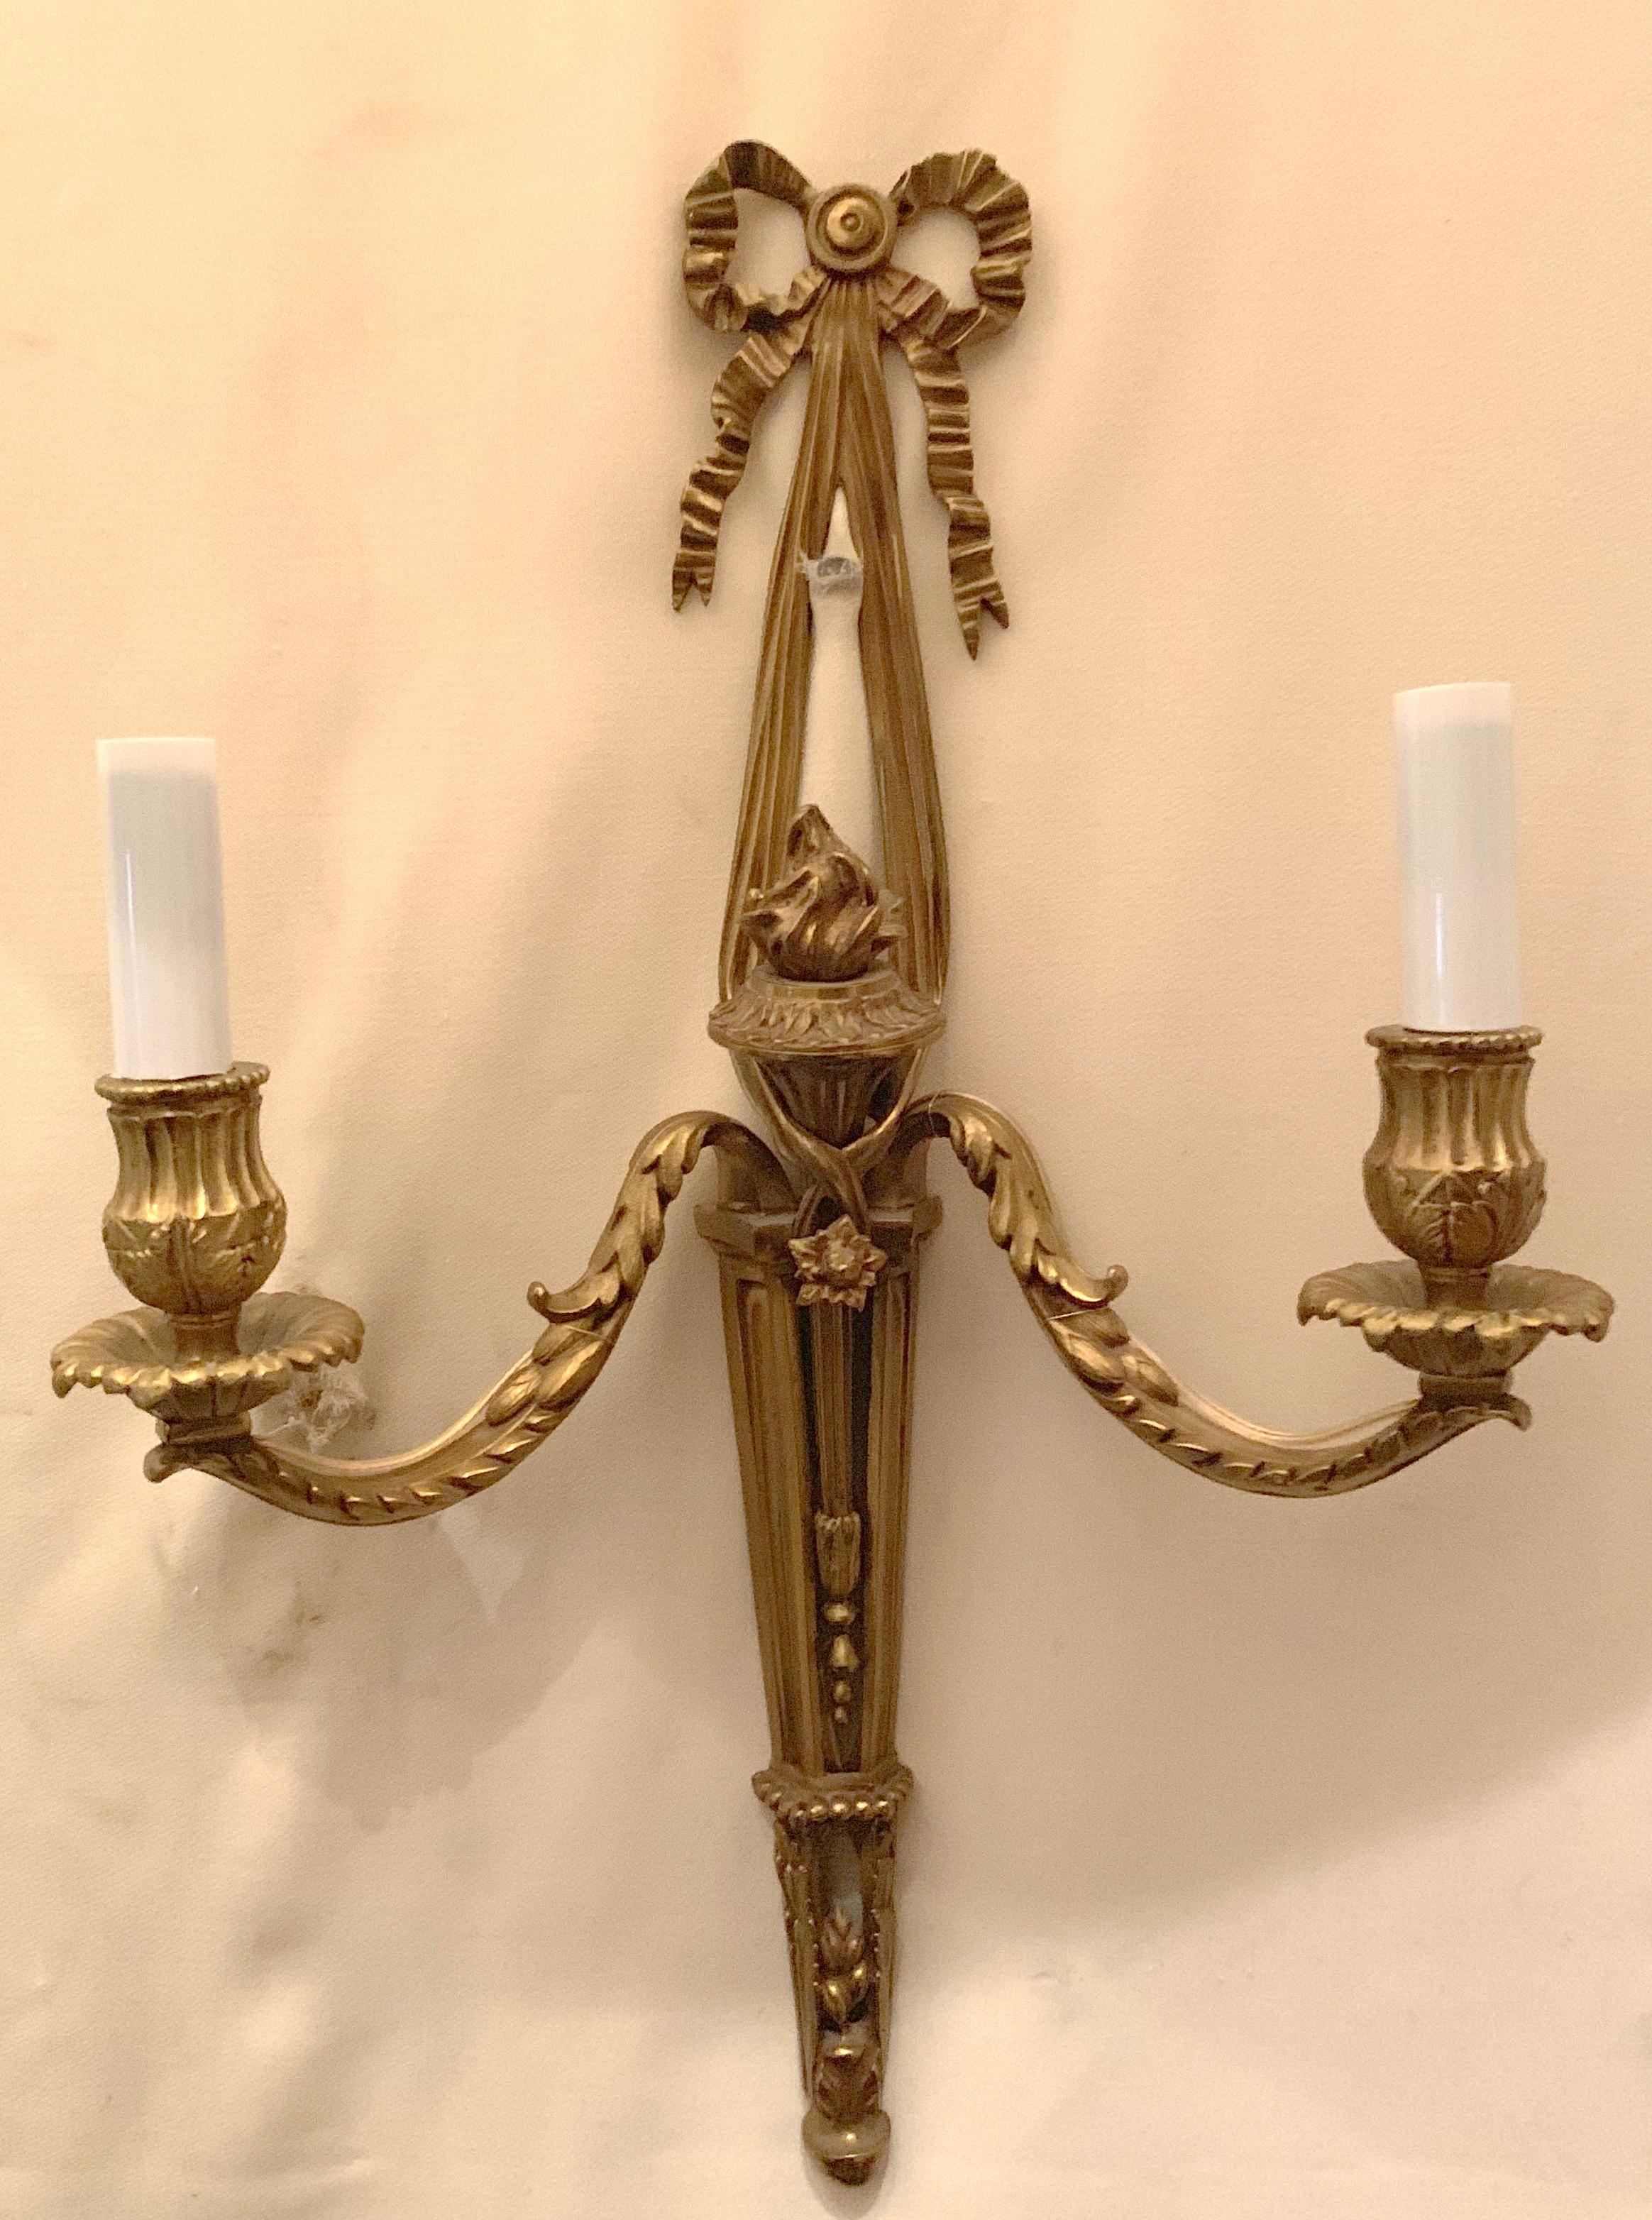 Magnifique paire d'appliques à 2 bras de style néoclassique français en bronze avec urne, noeud, glands et filigrane
Entièrement refait avec de nouvelles prises et un nouveau câblage.